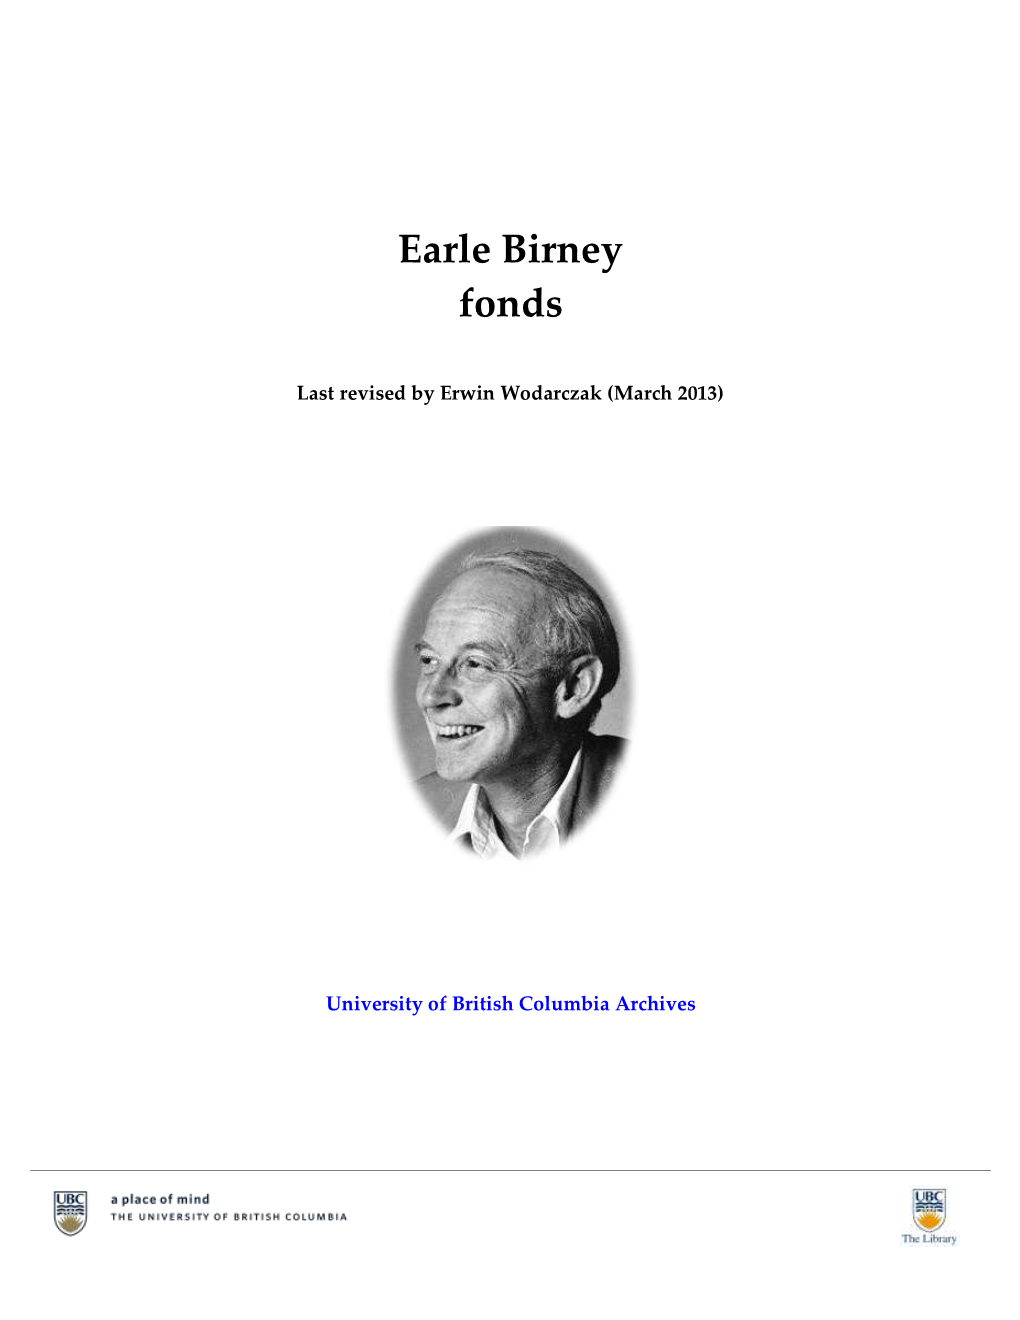 Earle Birney Fonds